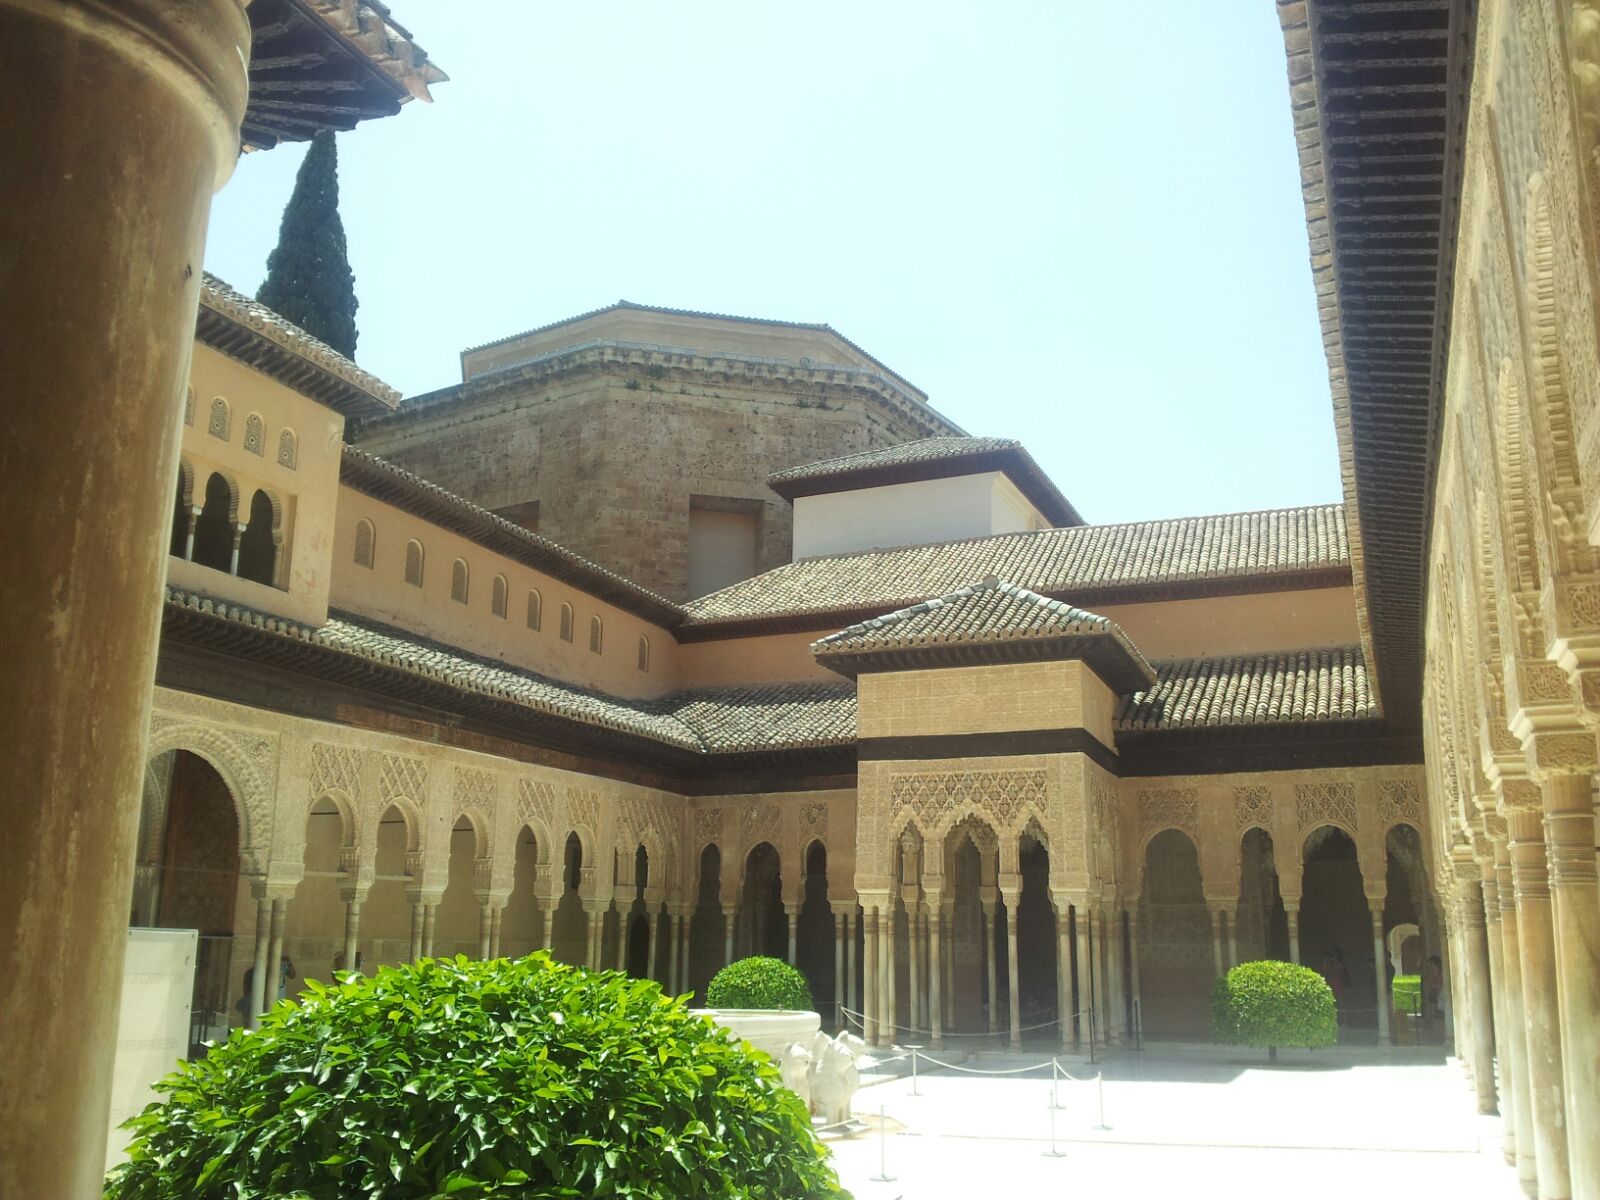 uno scorcio dell'Alhambra dall'interno